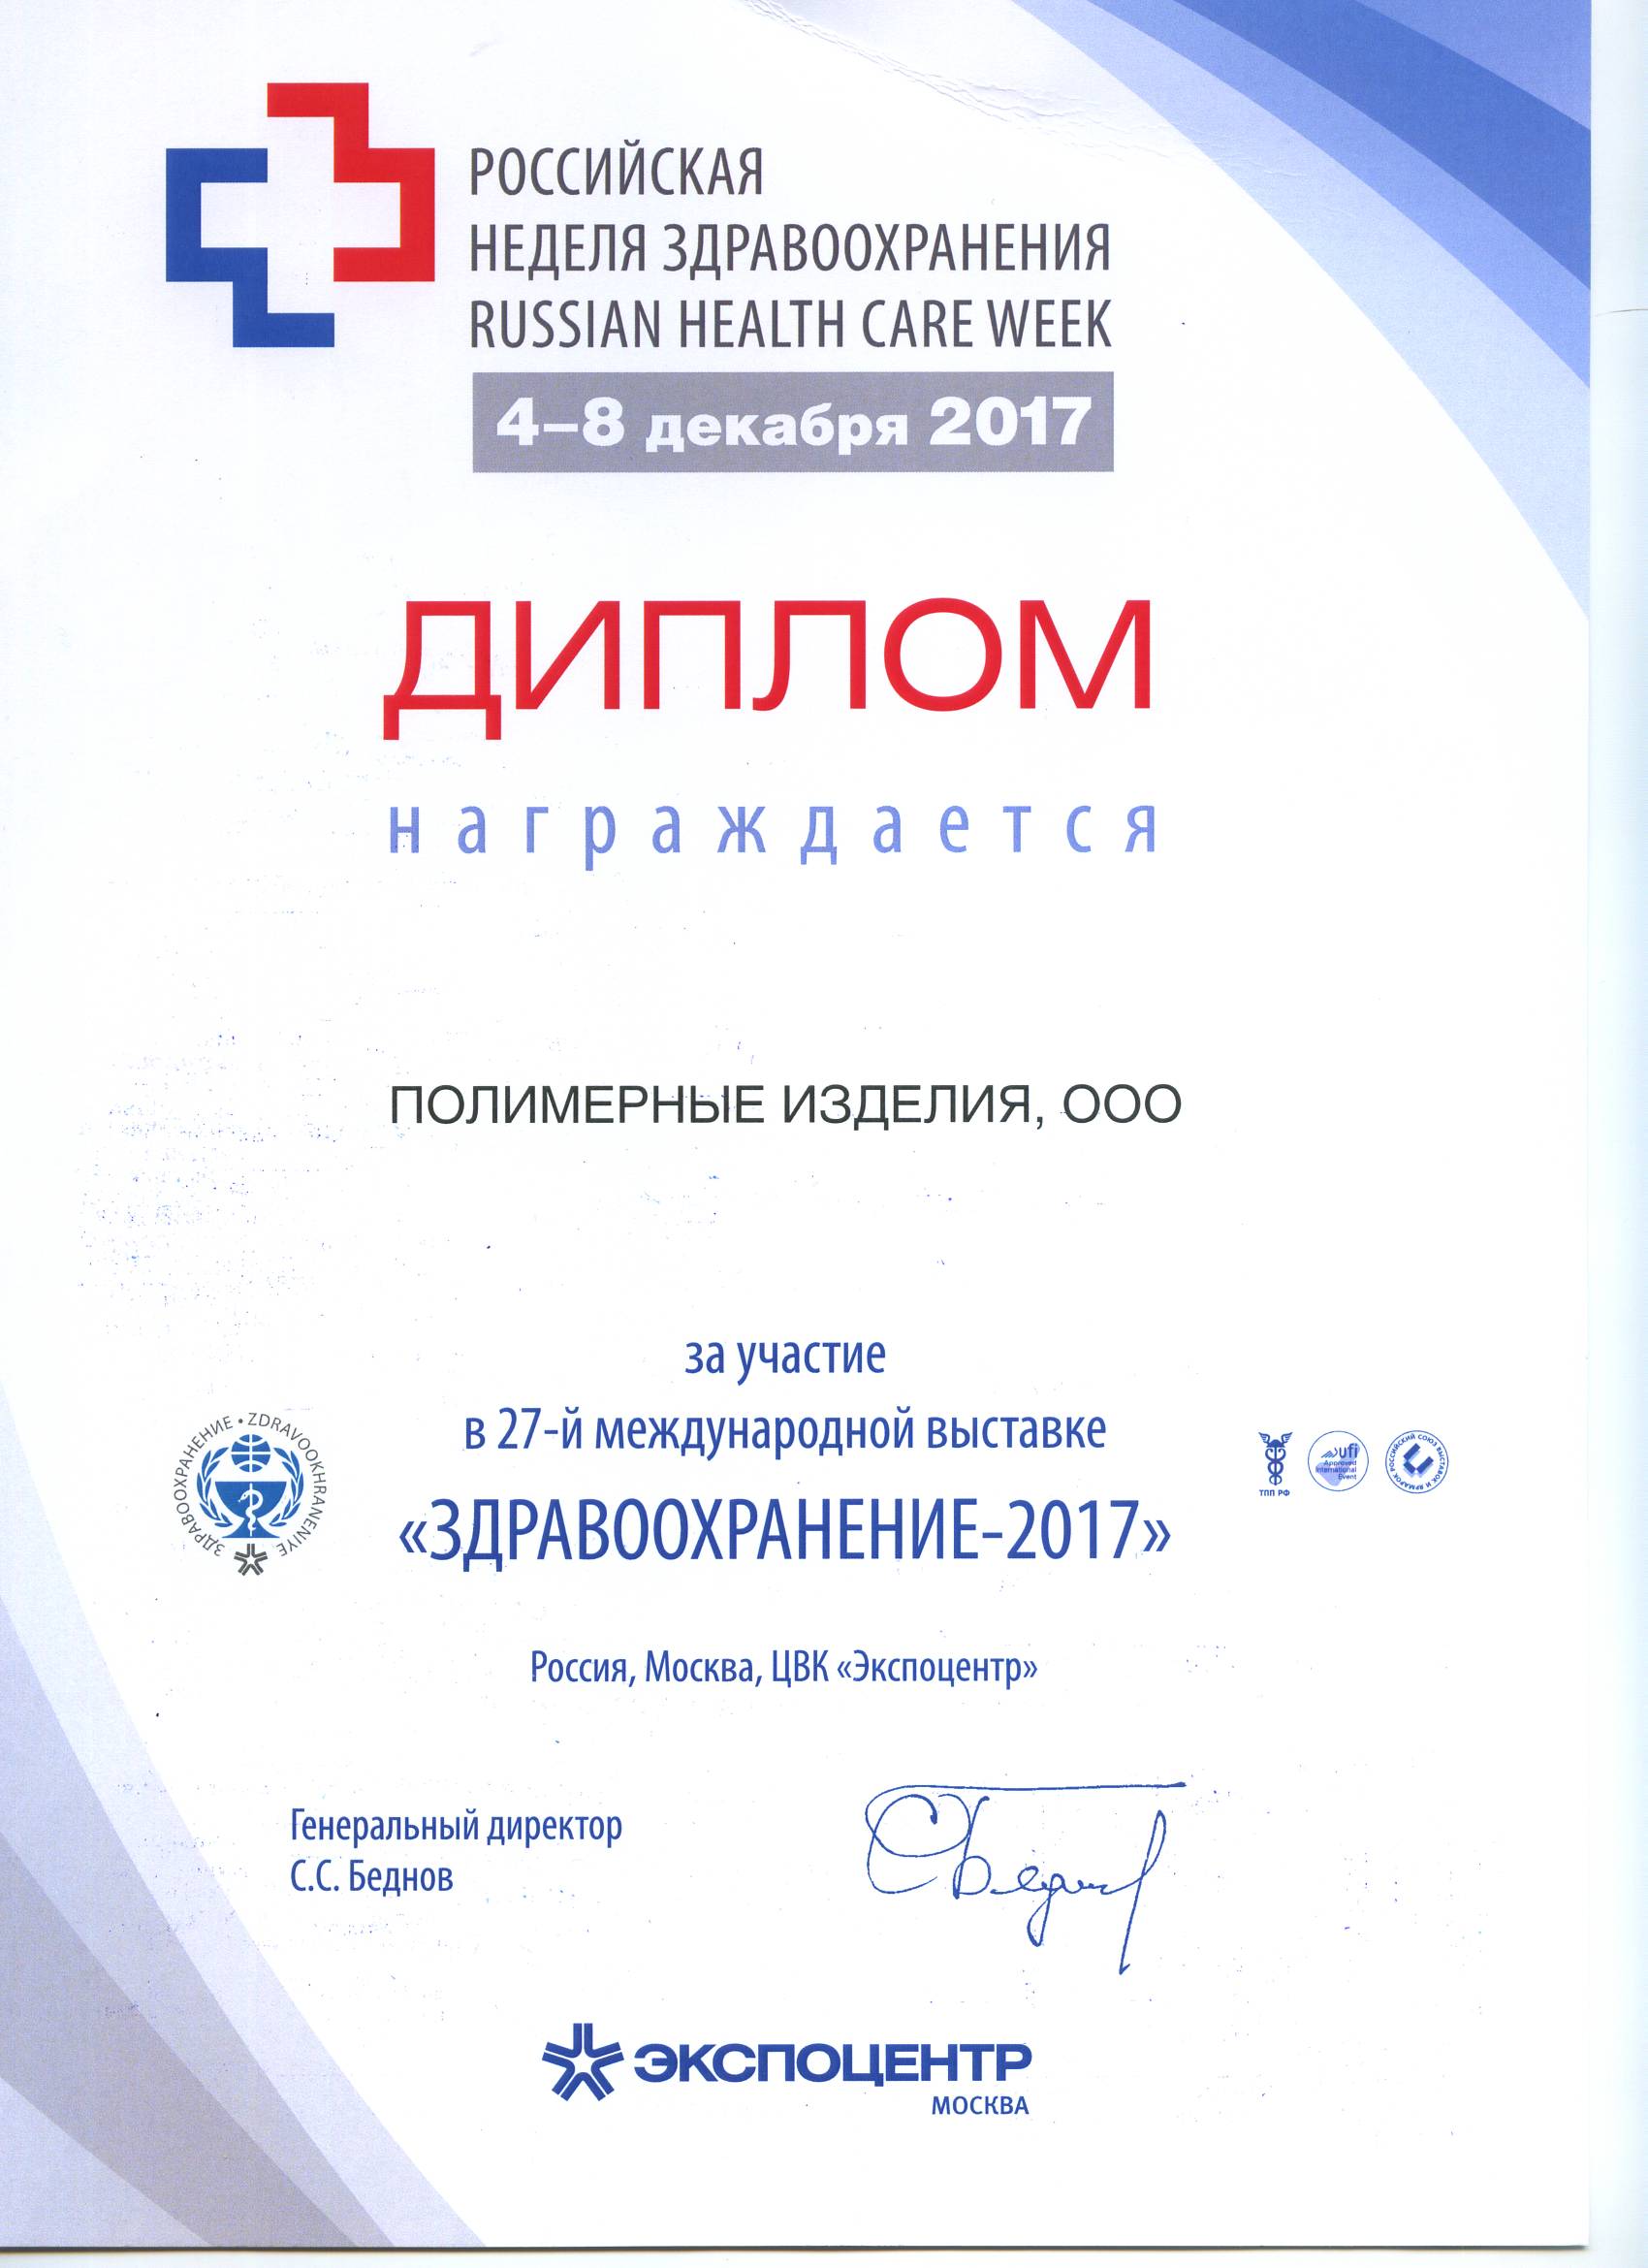 Итоги выставки  Здравоохранение 2017 в г.Москва